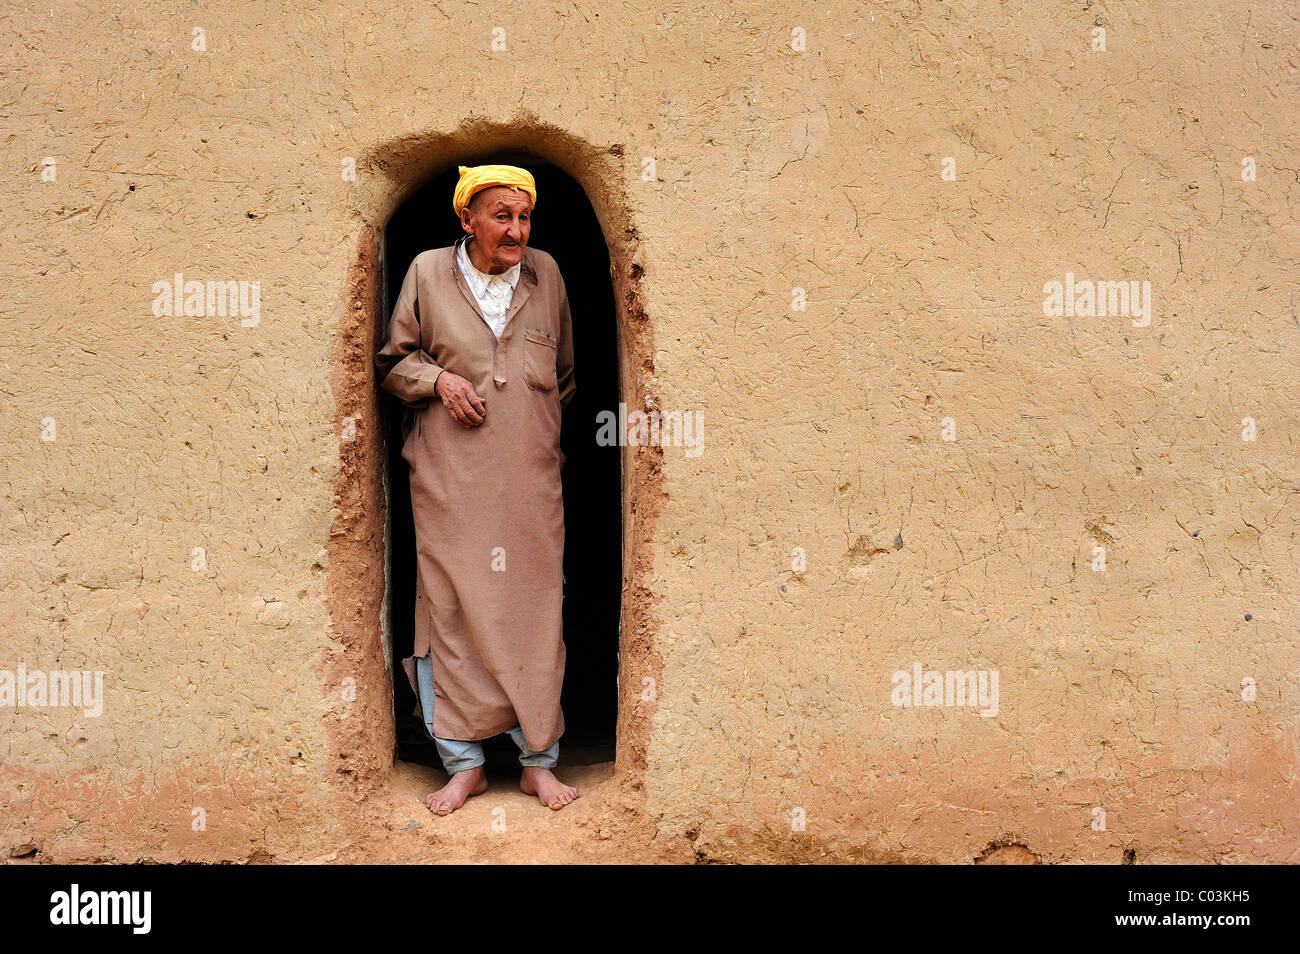 Personnes âgées homme berbère portant un turban à la recherche de l'entrée de sa maison de terre, Haut Atlas, Maroc, Afrique Banque D'Images